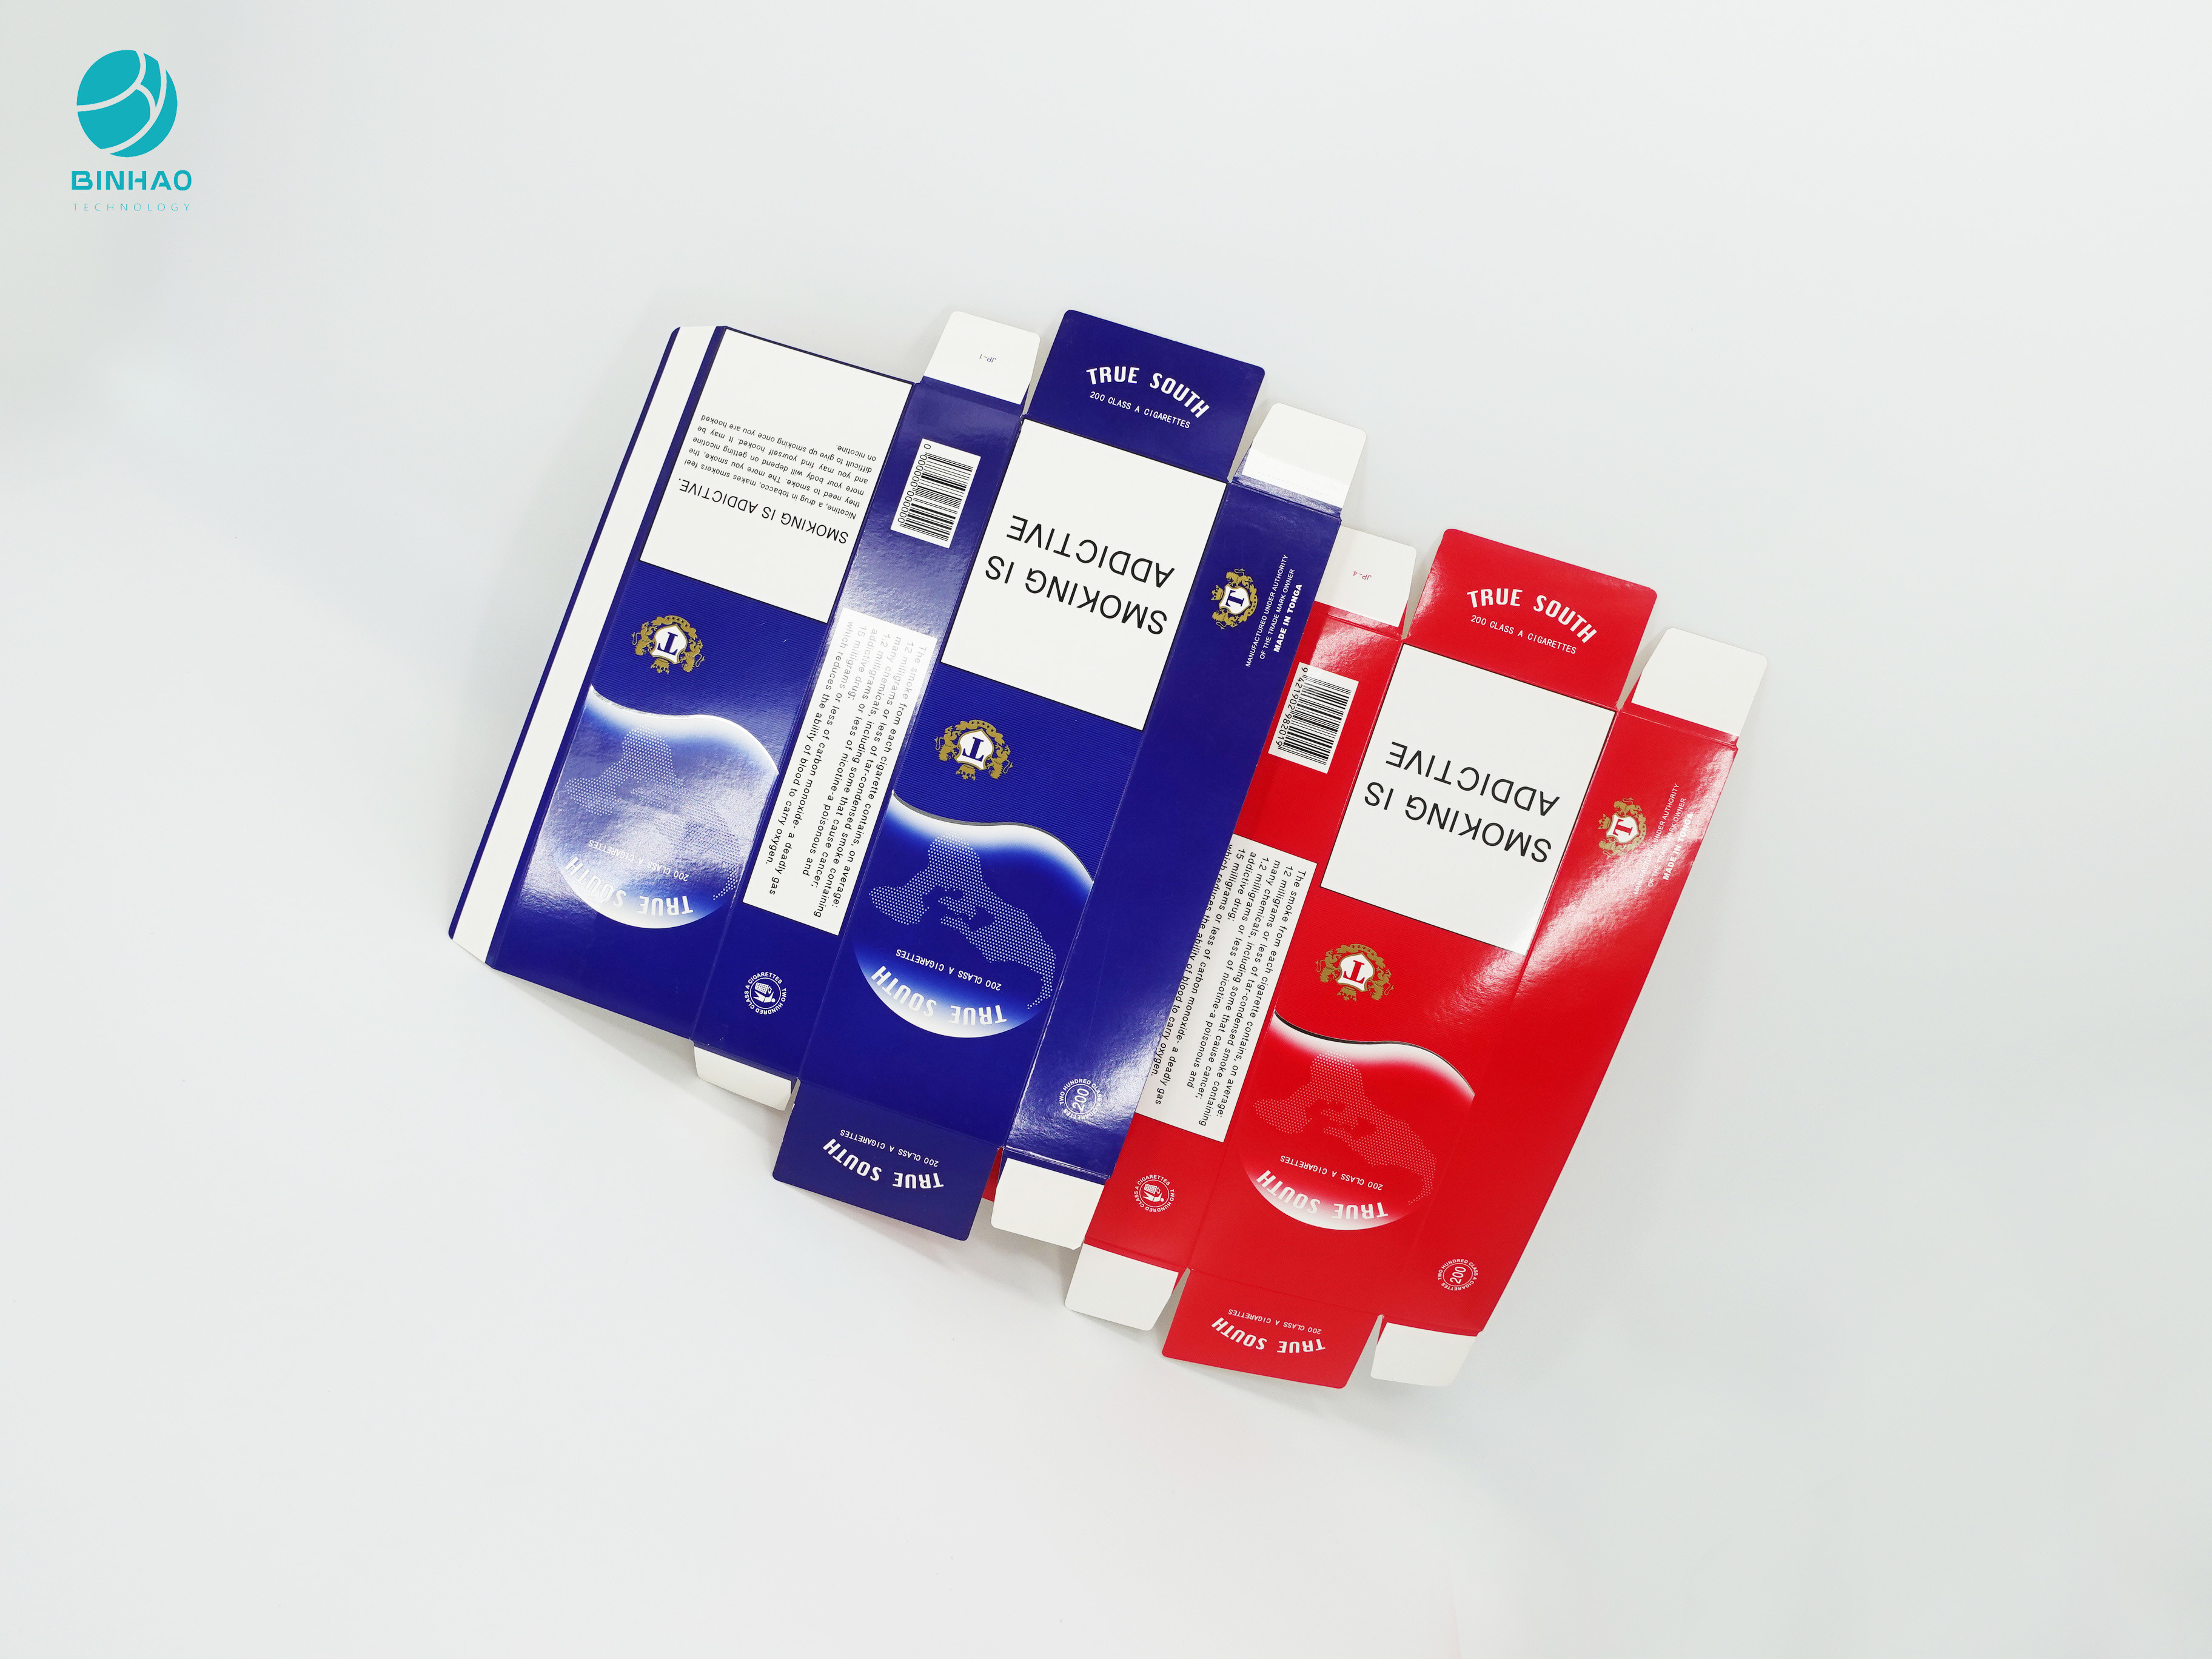 جعبه مقوایی یکبار مصرف با طراحی سری قرمز آبی برای بسته بندی سیگار